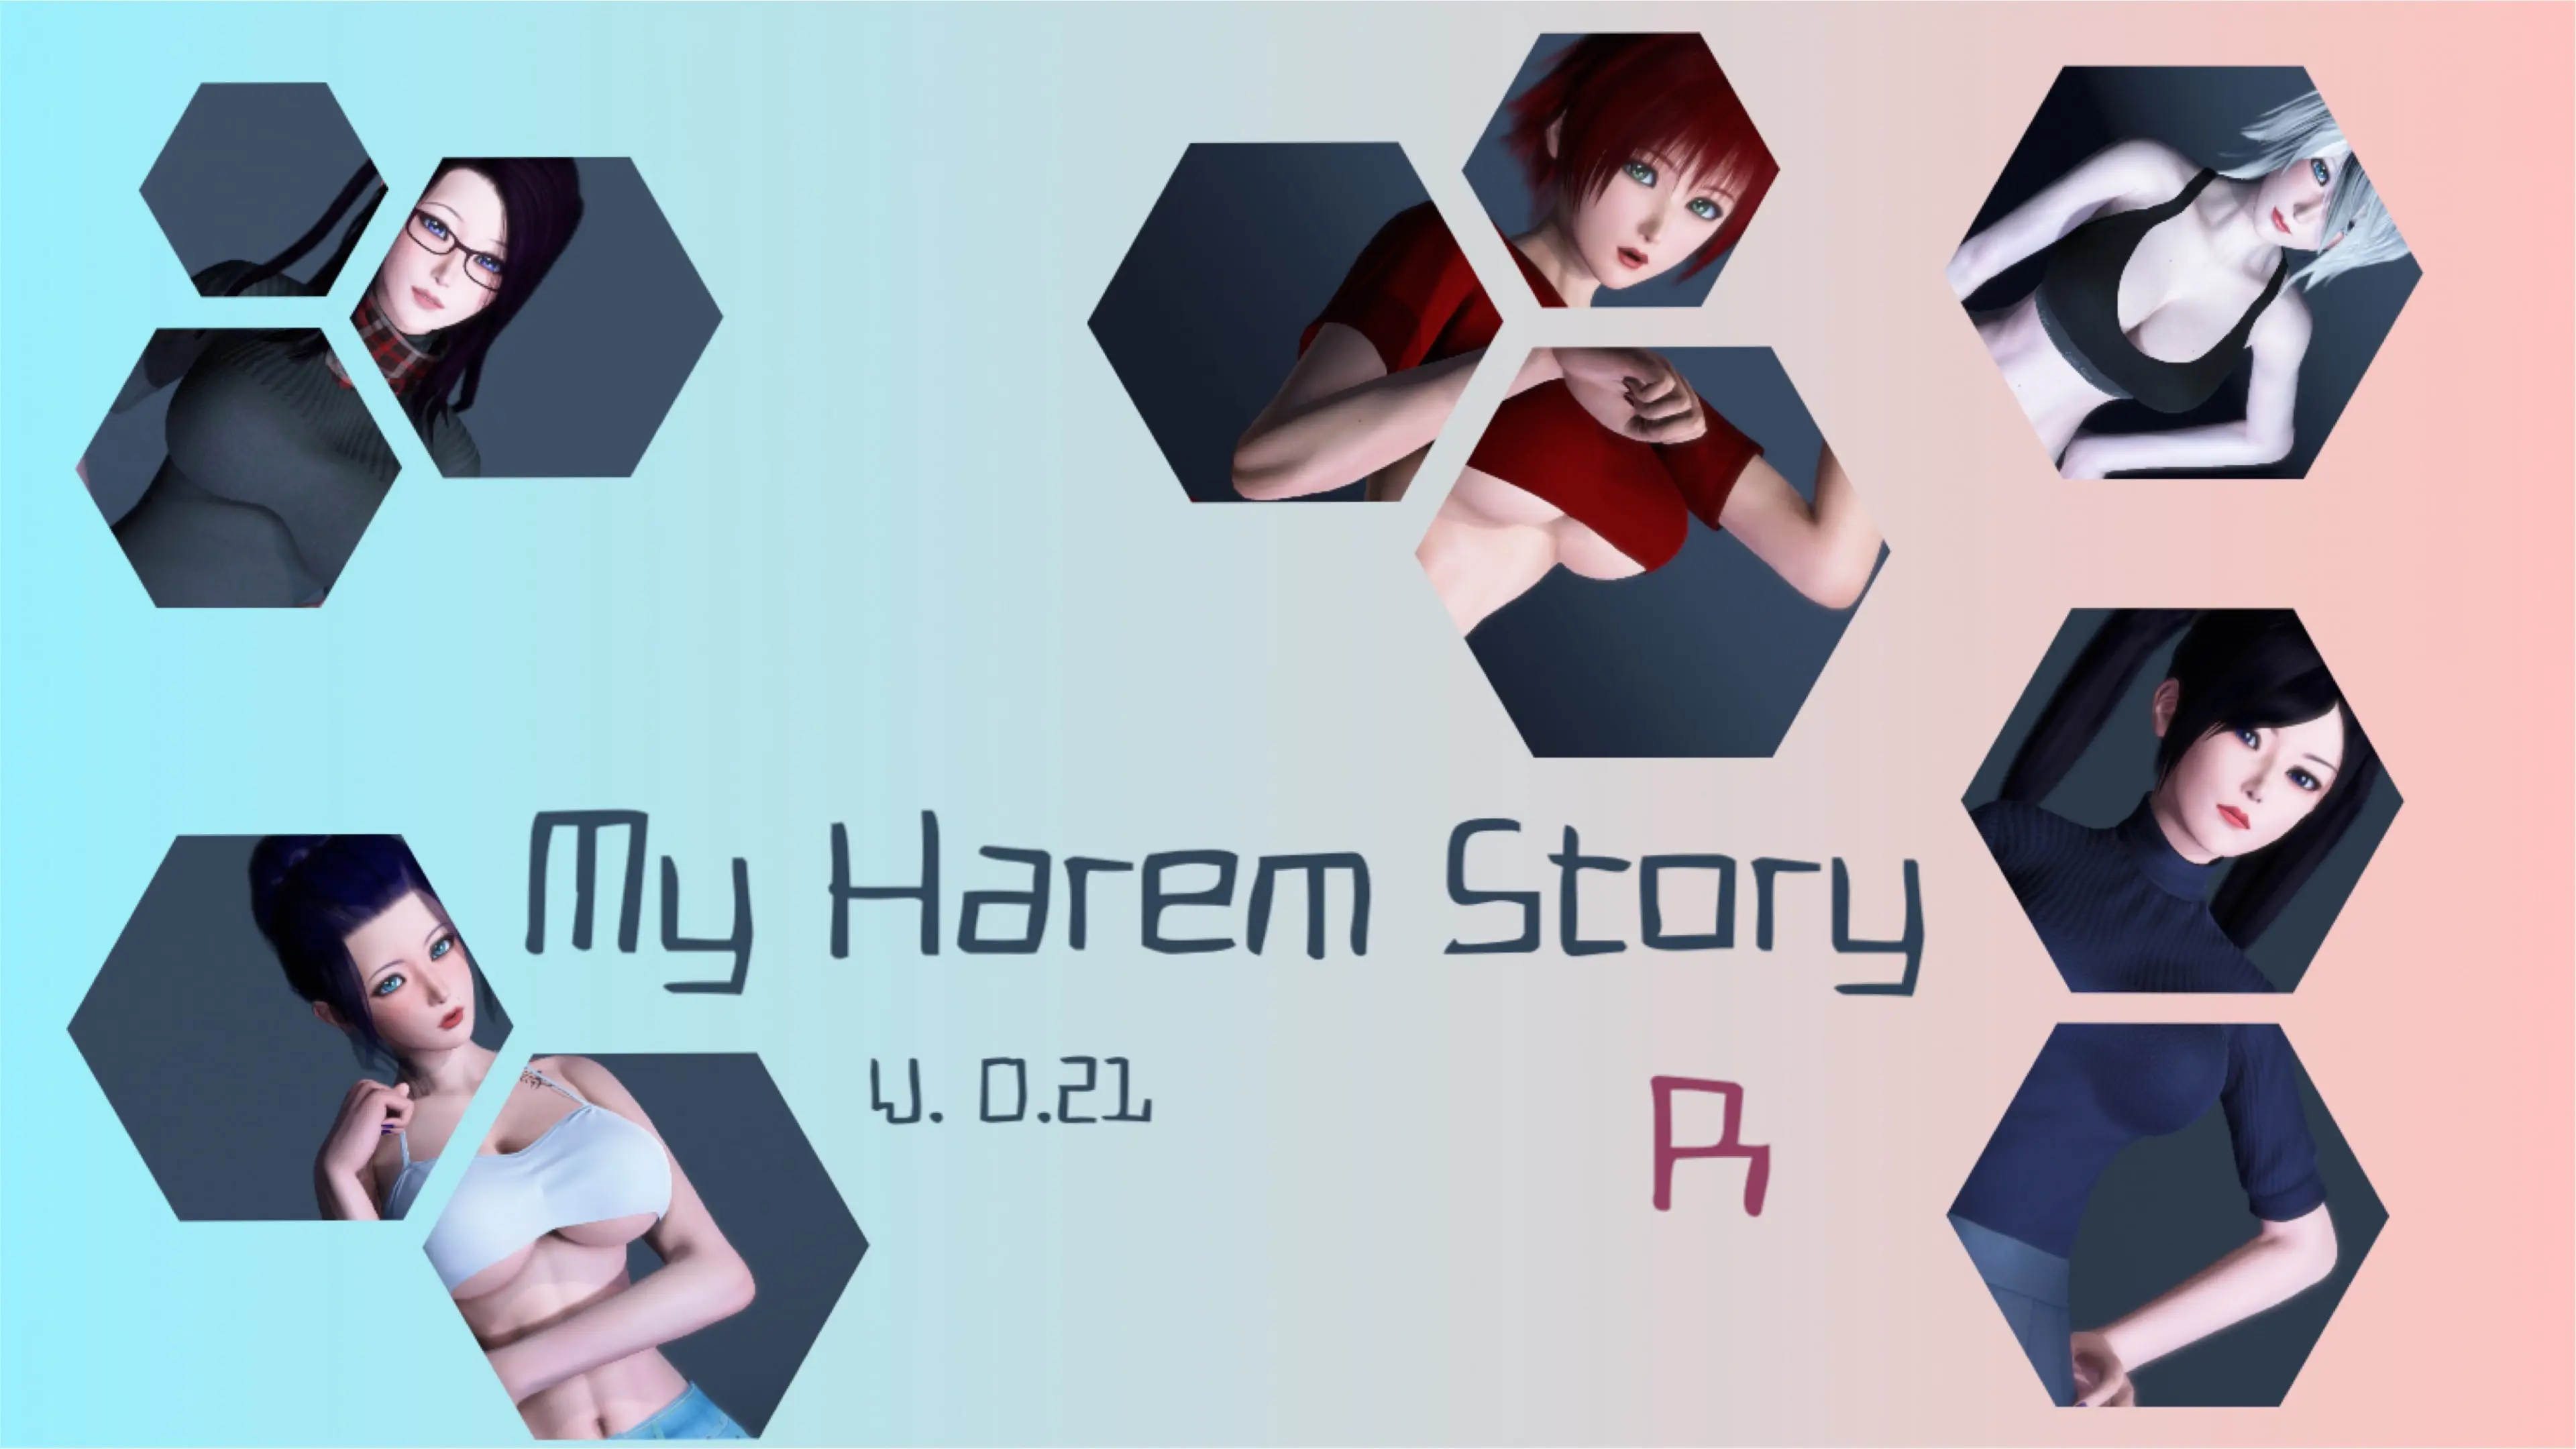 My Harem Story R [v0.21] main image